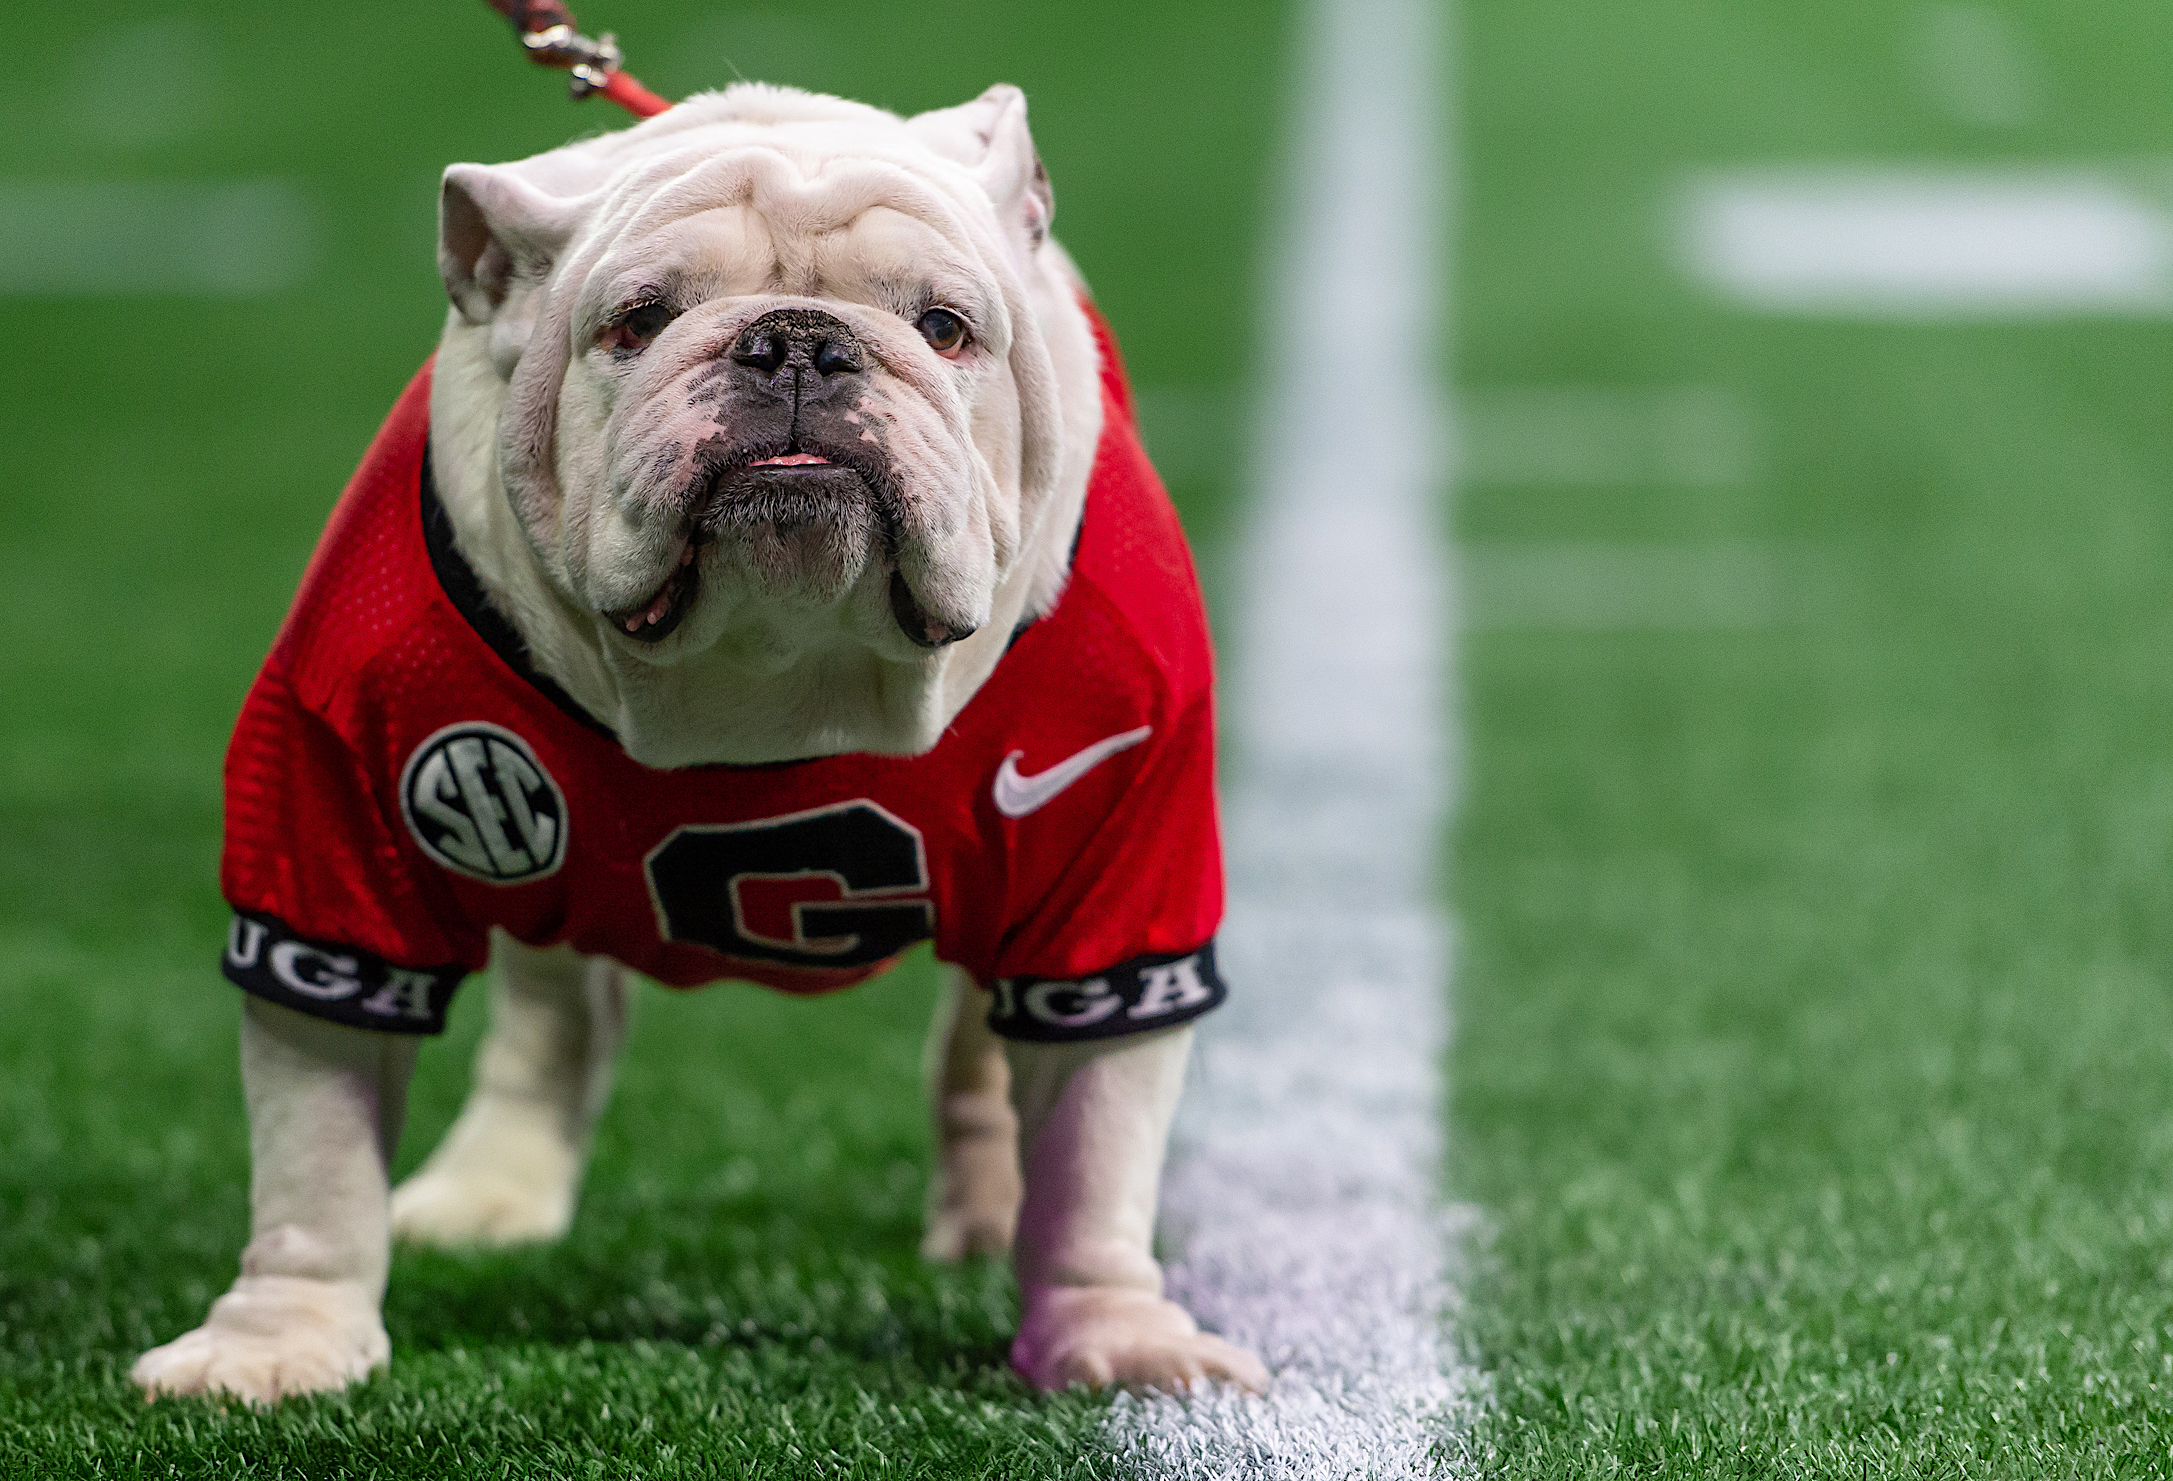 PETA calls out Georgia for 'outdated' use of live bulldog mascot UGA